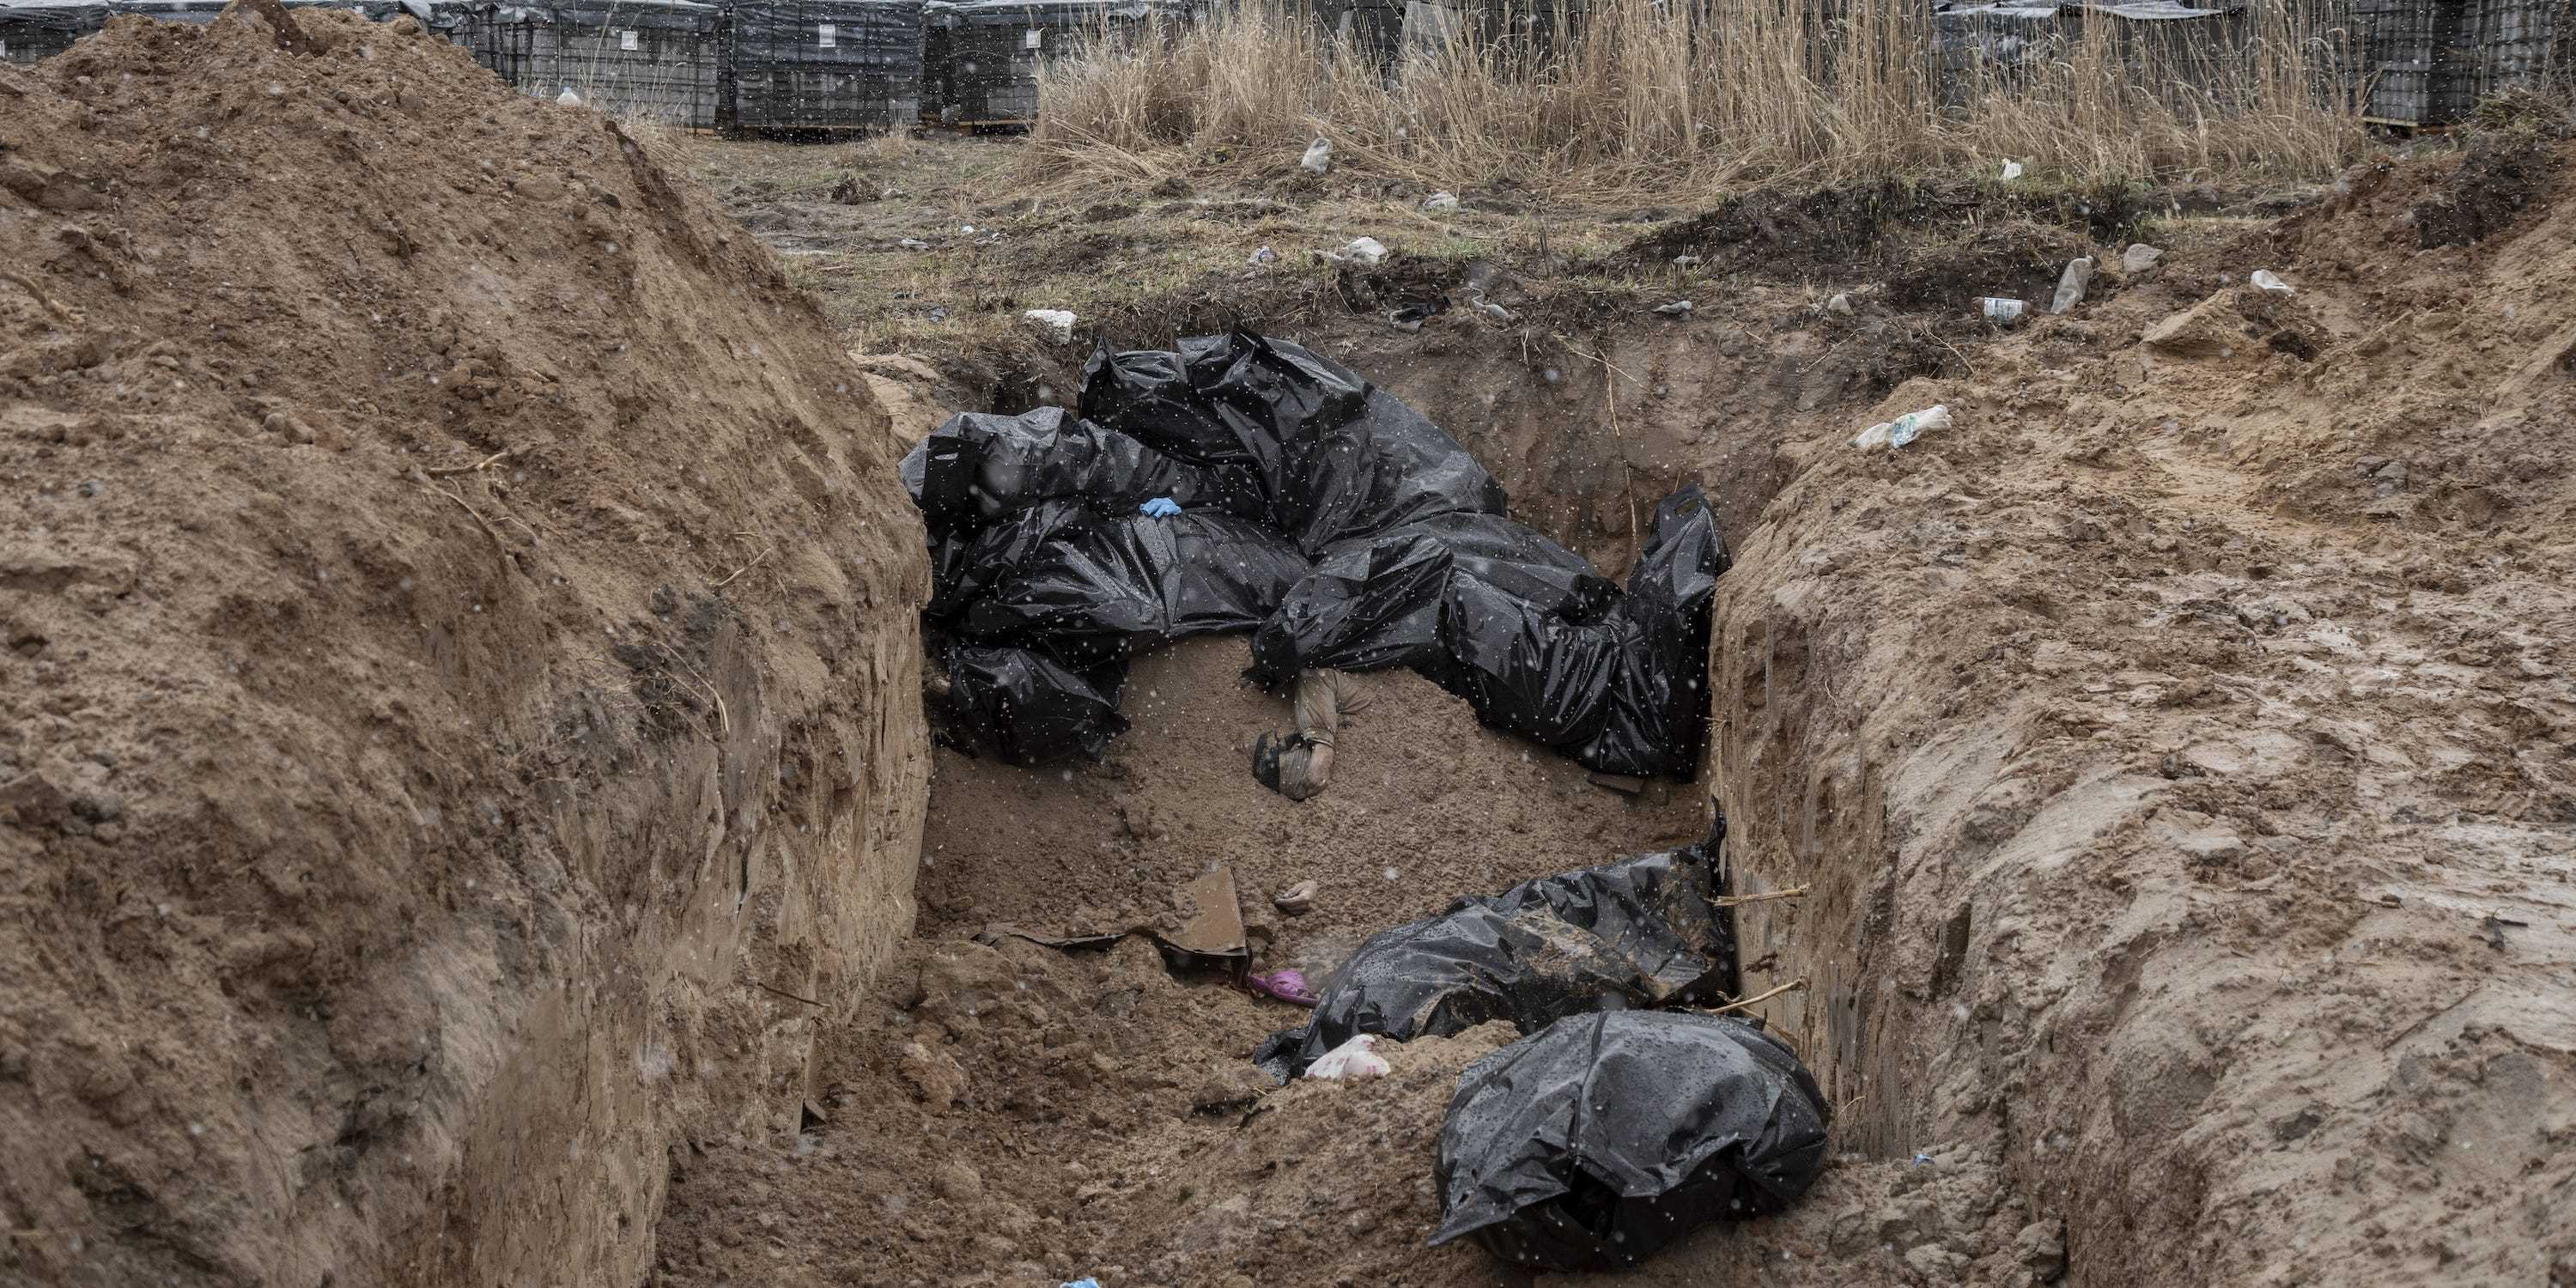 BUCHA, PROVINZ KYIV, UKRAINE, 3. APRIL: Leichen von Zivilisten werden in einem Massengrab in der Stadt Bucha am Stadtrand von Kiew gesehen, nachdem die ukrainische Armee das Gebiet nach dem Abzug der russischen Armee aus der Region Kiew gesichert hatte vergangenen Tagen, Bucha, Ukraine am 03. April 2022. (Foto von Narciso Contreras/Anadolu Agency via Getty Images)